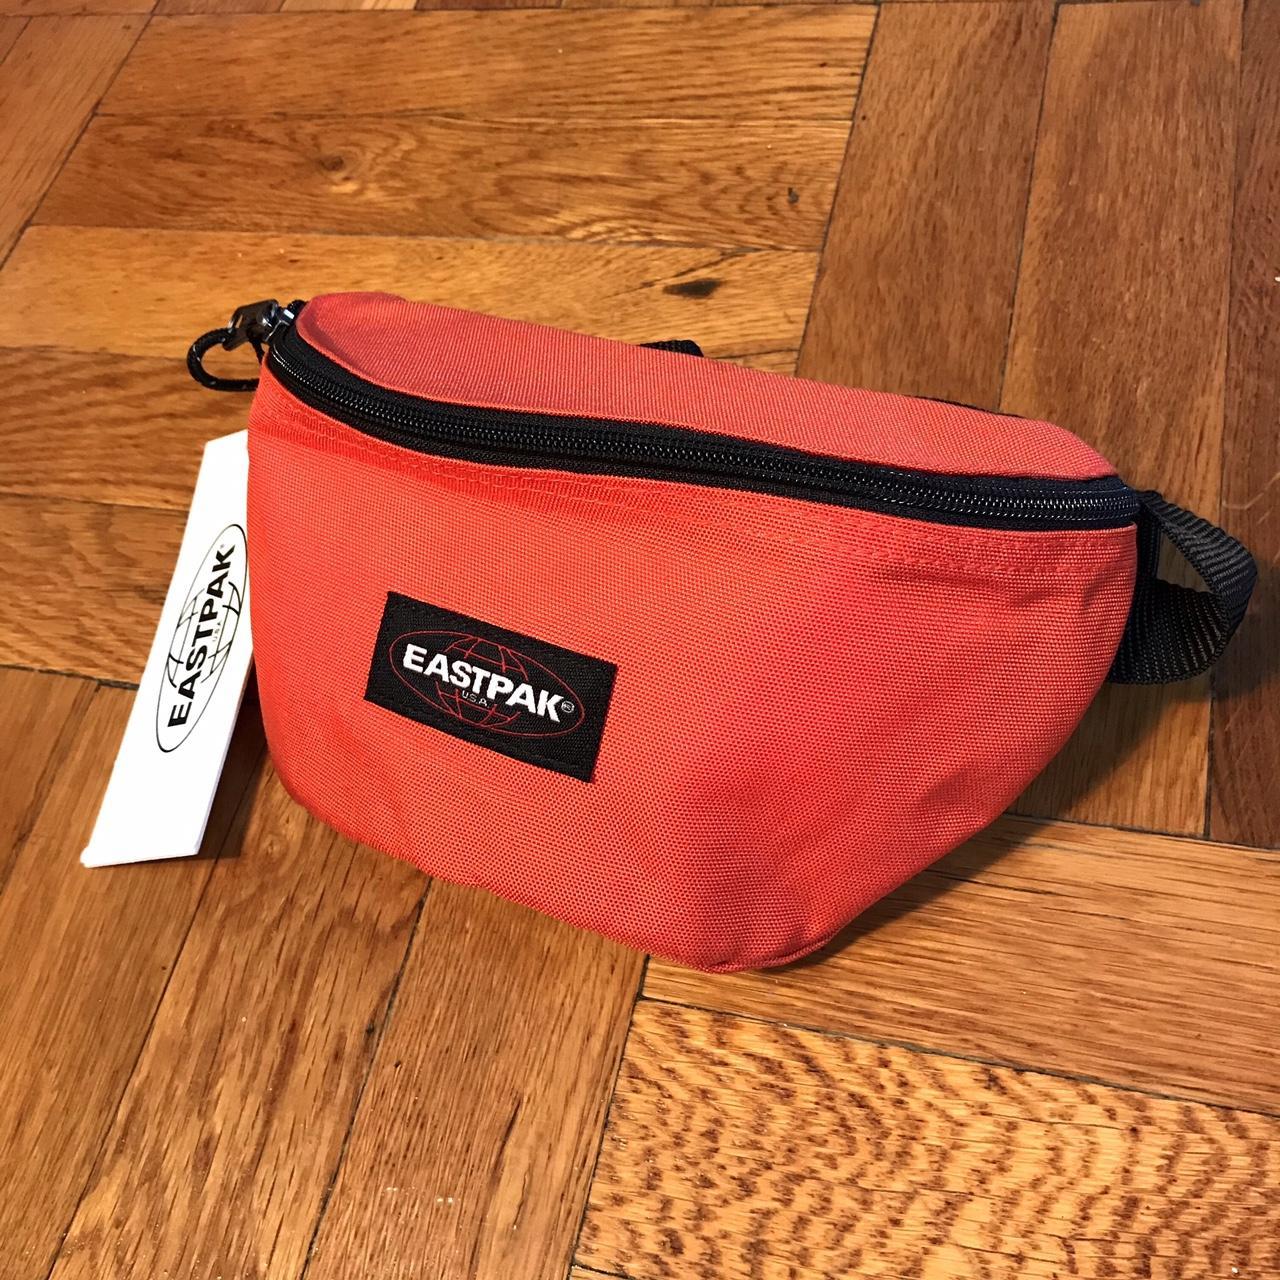 Eastpak Men's Orange and Black Bag